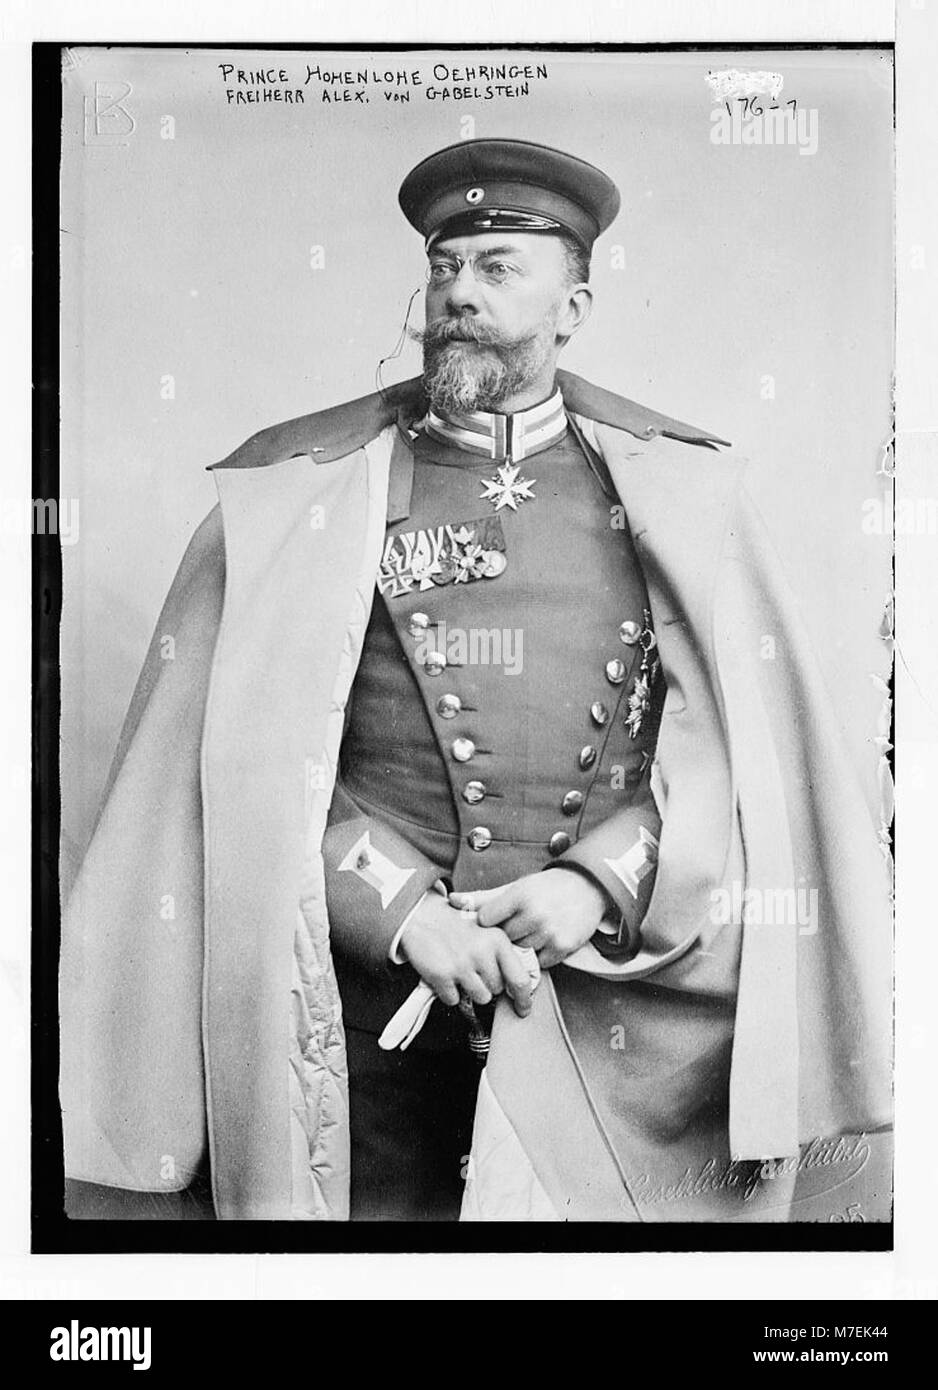 Prince Hohenlohe Oehringen, Freiherr Alex. Von Gabelstein, standing, in uniform, Gestulich geschurt. - Gesetulich LCCN2014680996 Stock Photo